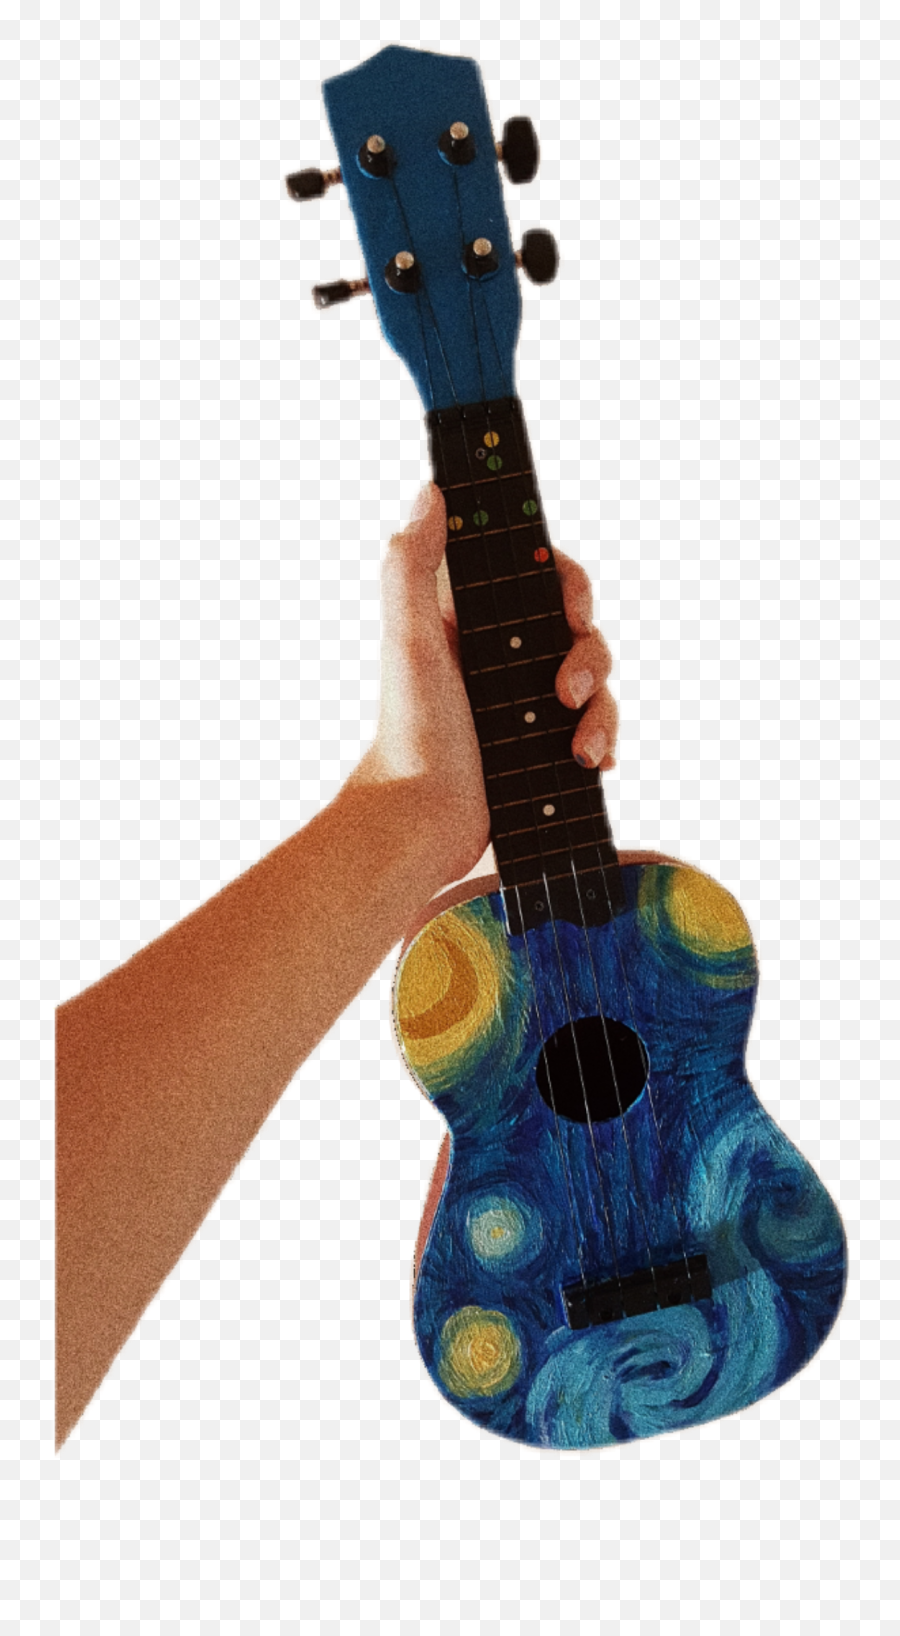 Ukulele Aesthetic Painting Starynight - Electric Guitar Emoji,Ukulele Emoji